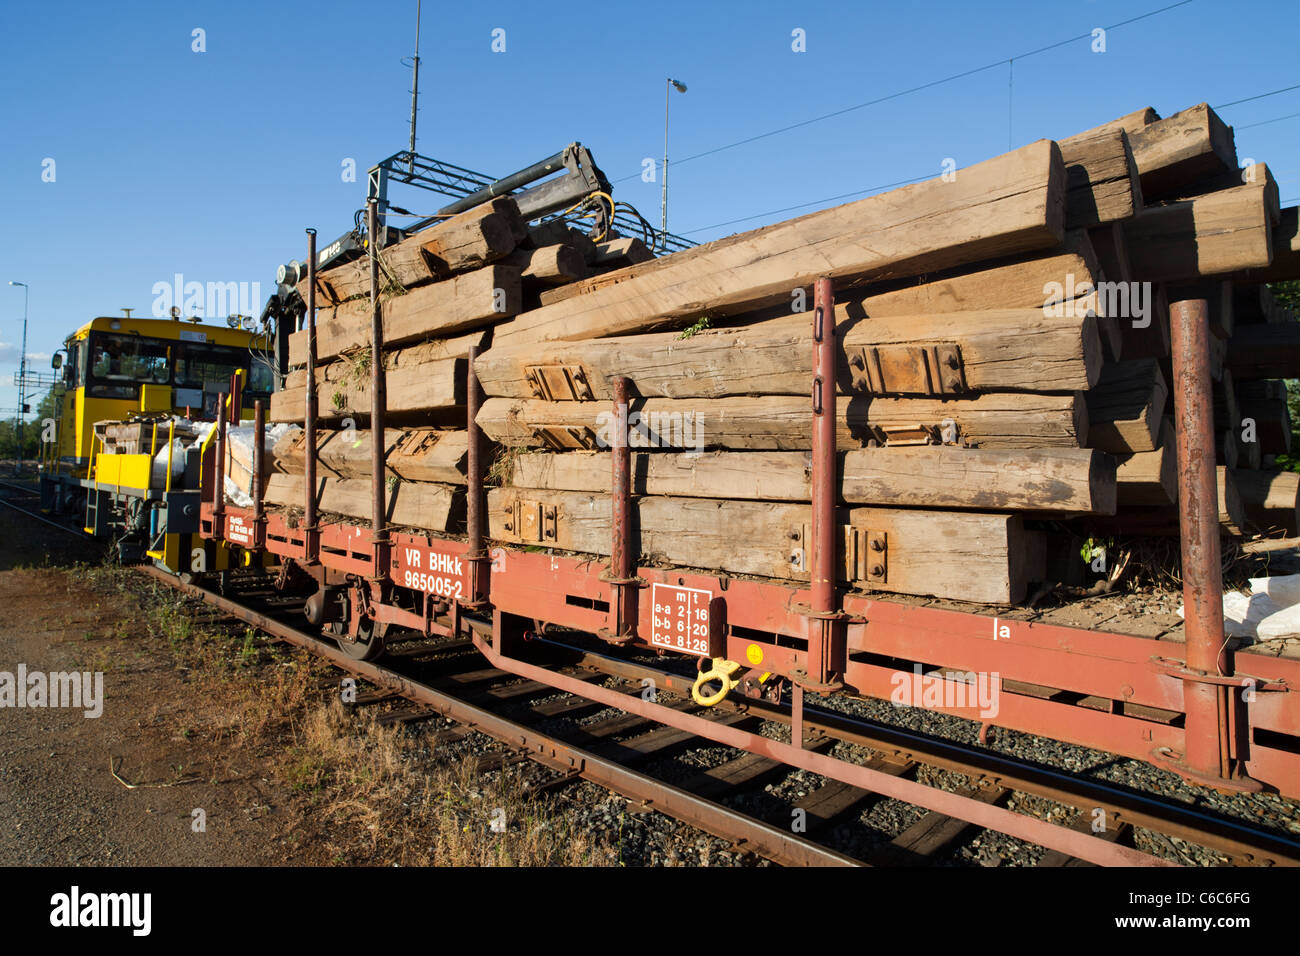 Carga de trainload de trainers viejos, de madera, retirados y tratados con creosota, Finlandia Foto de stock